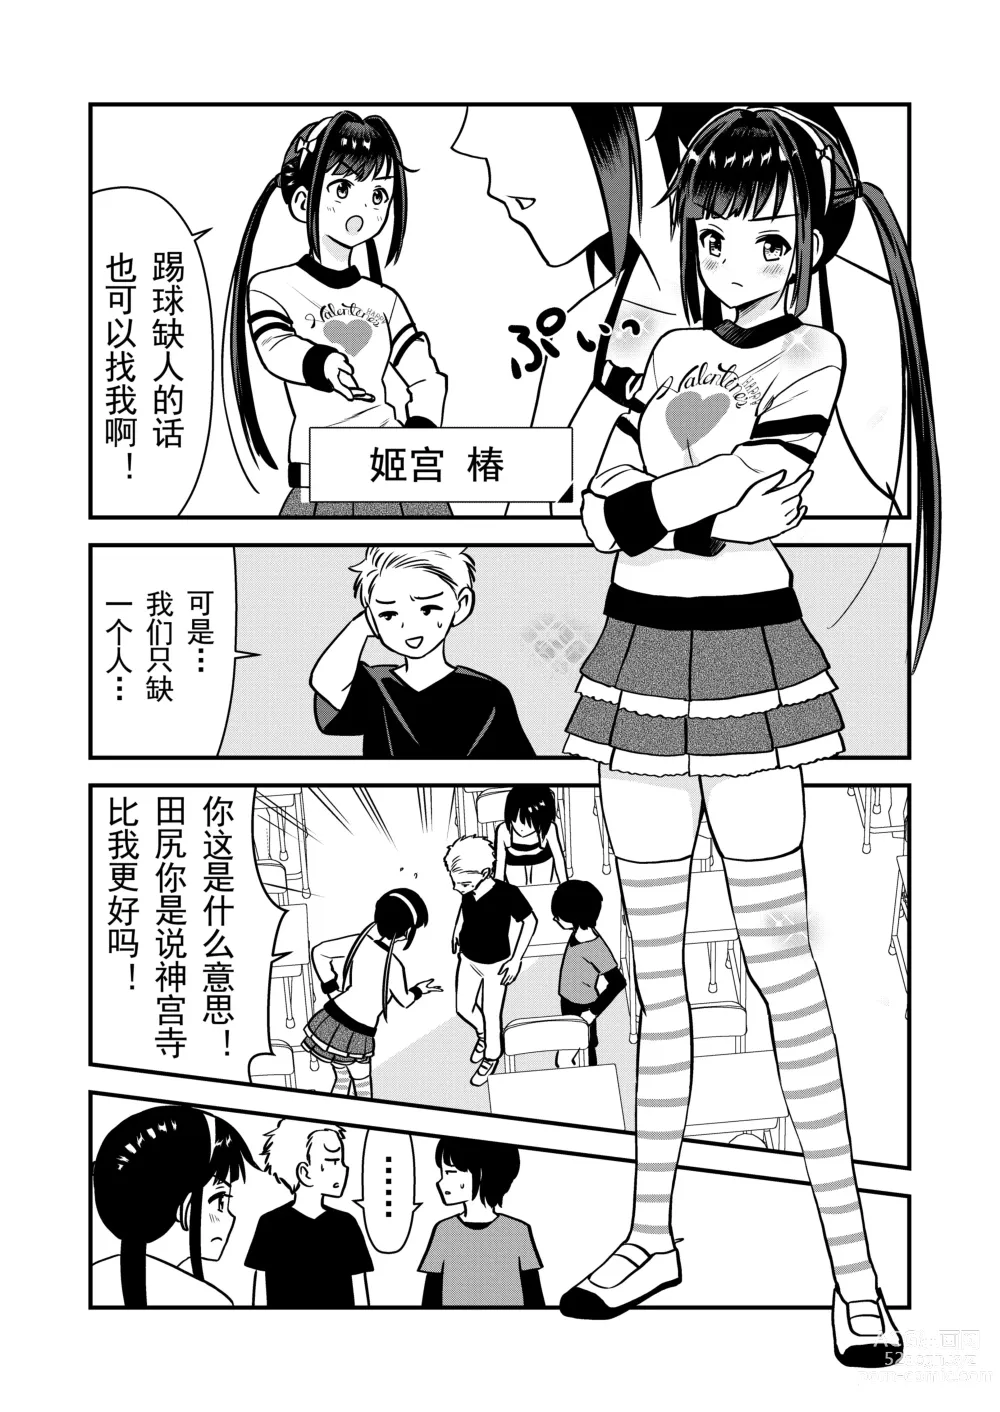 Page 7 of doujinshi 被惩罚后的当天,下半身禁止穿衣服的学校